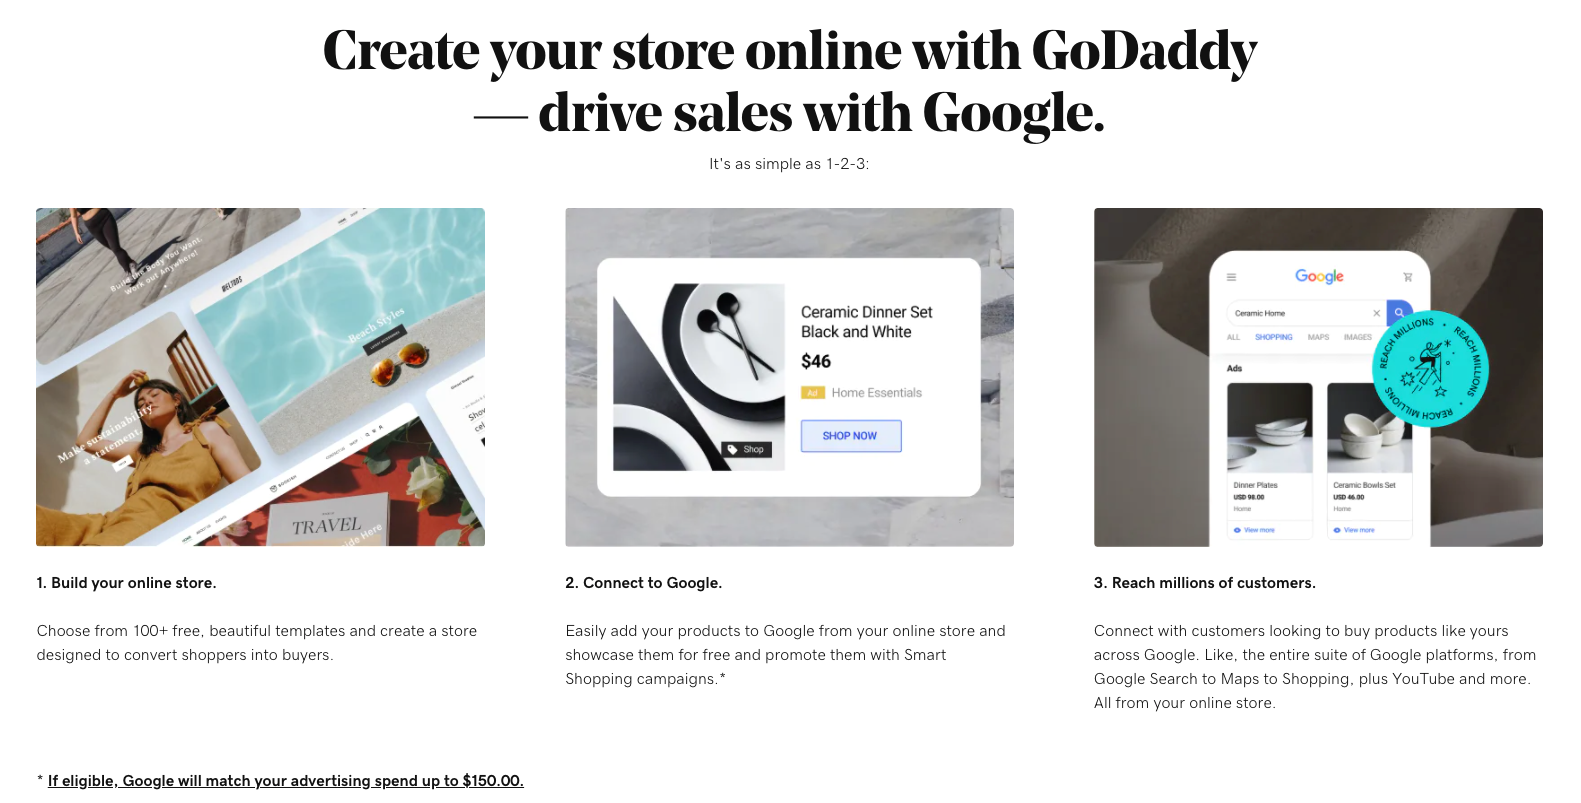 Une capture d'écran de l'écran marketing montrant les avantages et la facilité de connexion à Google Shopping